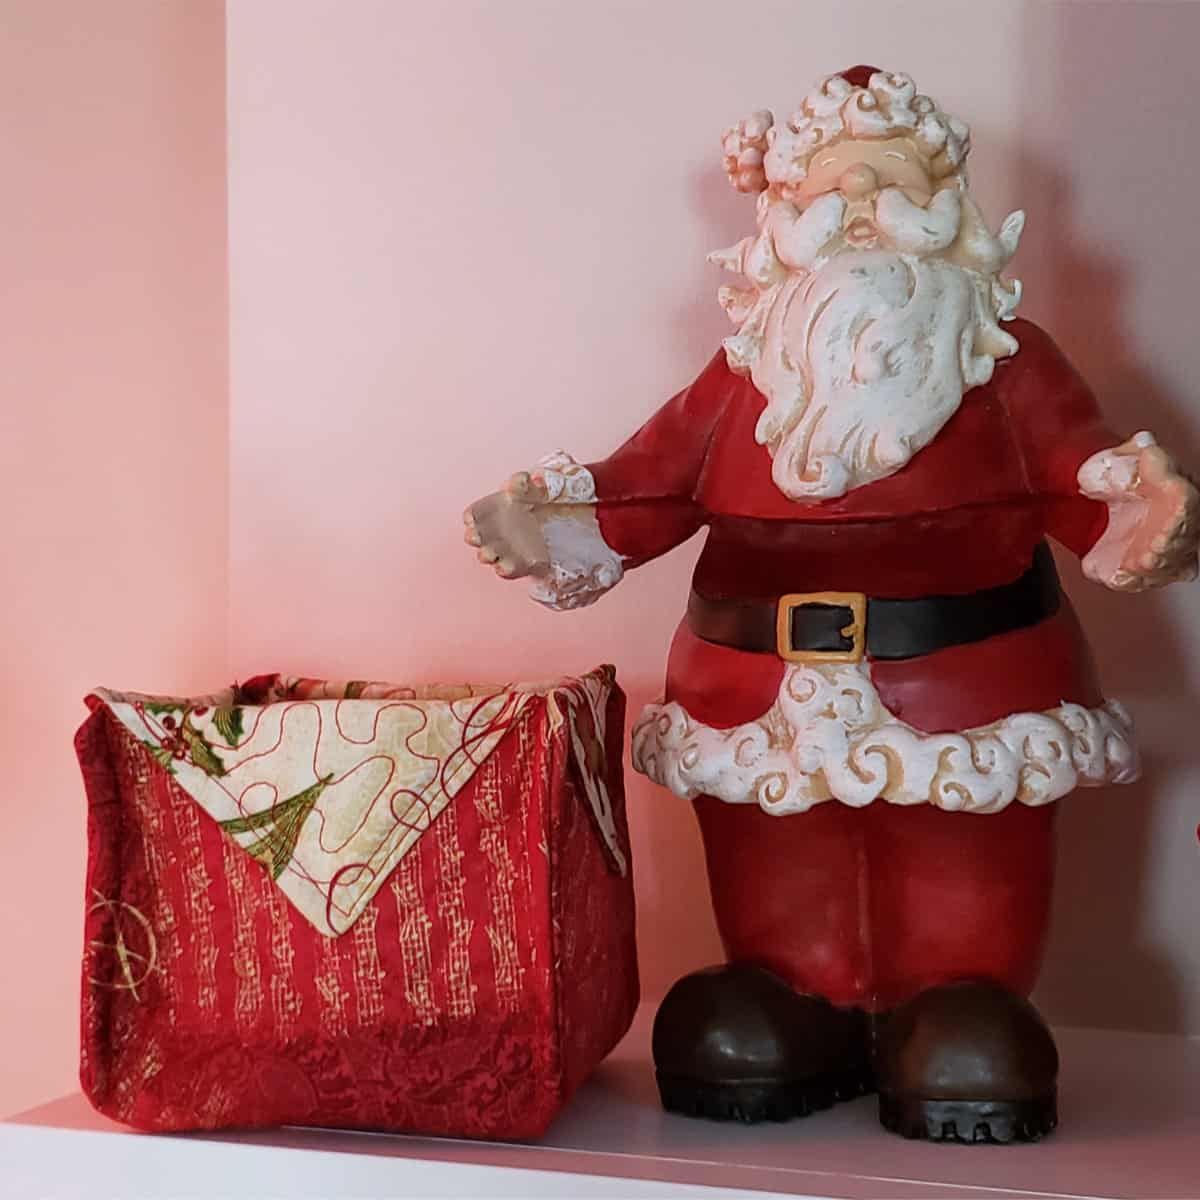 fabric basket and Santa